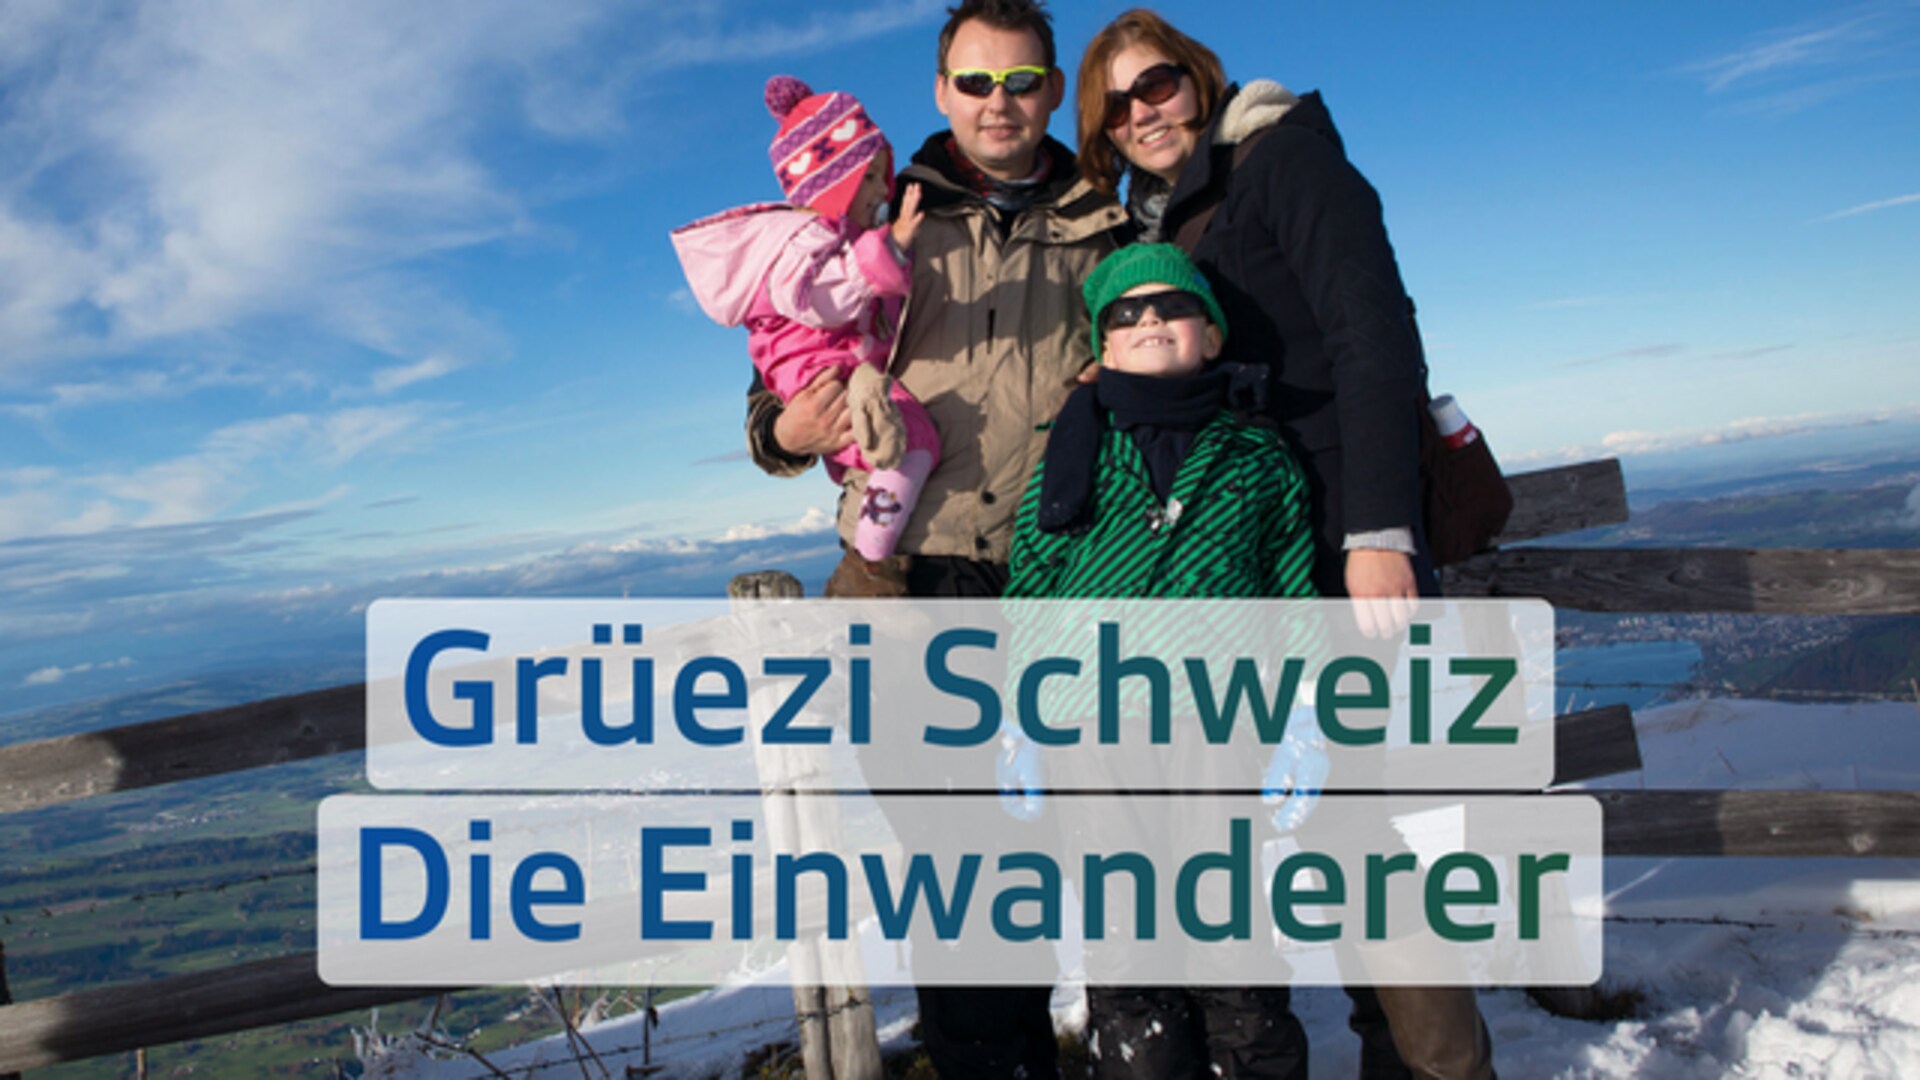 Grüezi Schweiz – Die Einwanderer